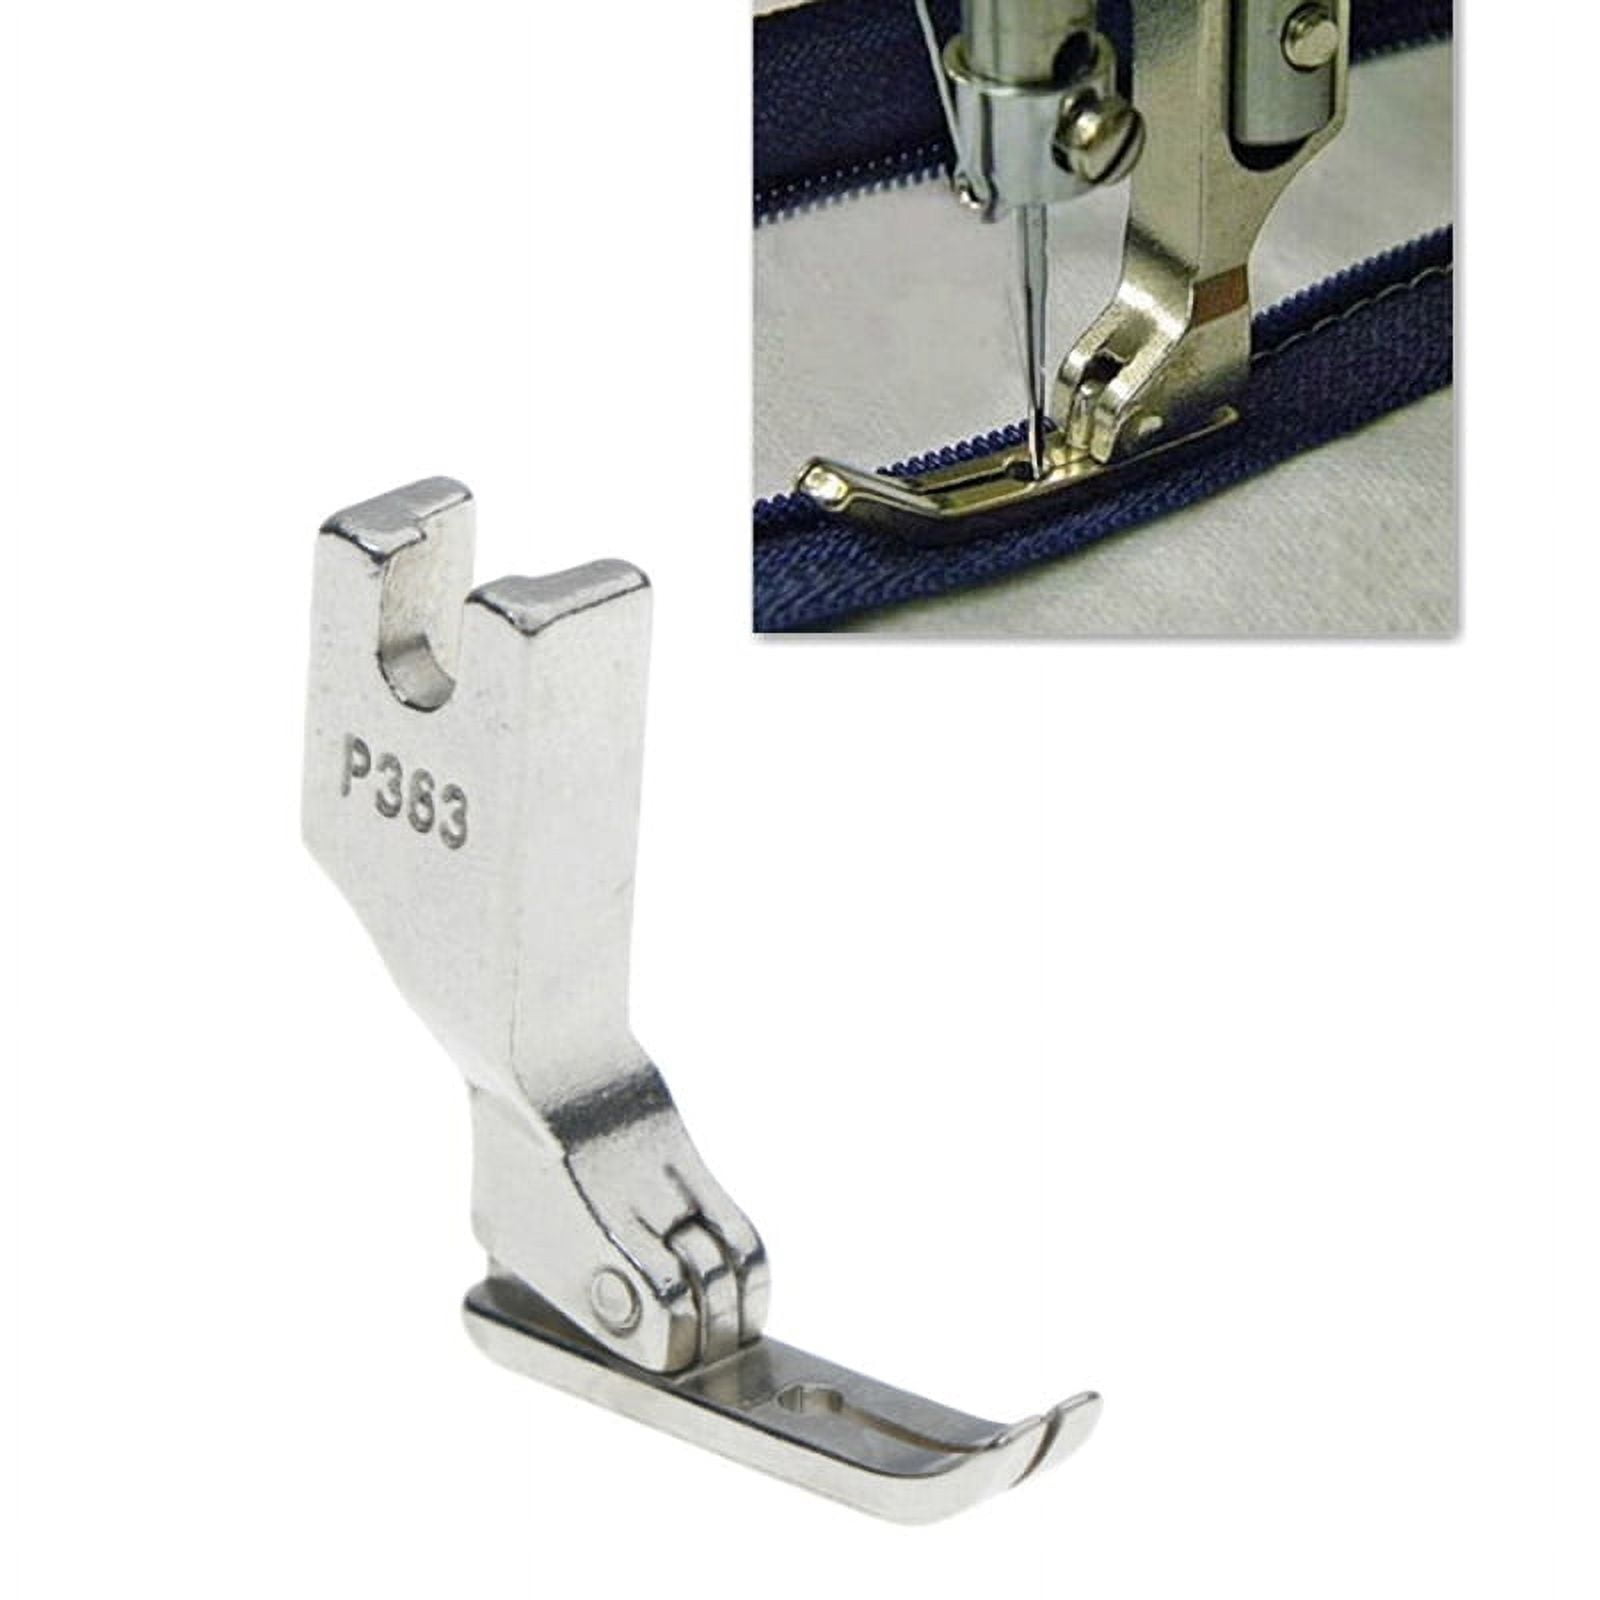 Sewing Machine Adjustable Zipper Foot Juki TL Brother PQ1500 Janome 1600